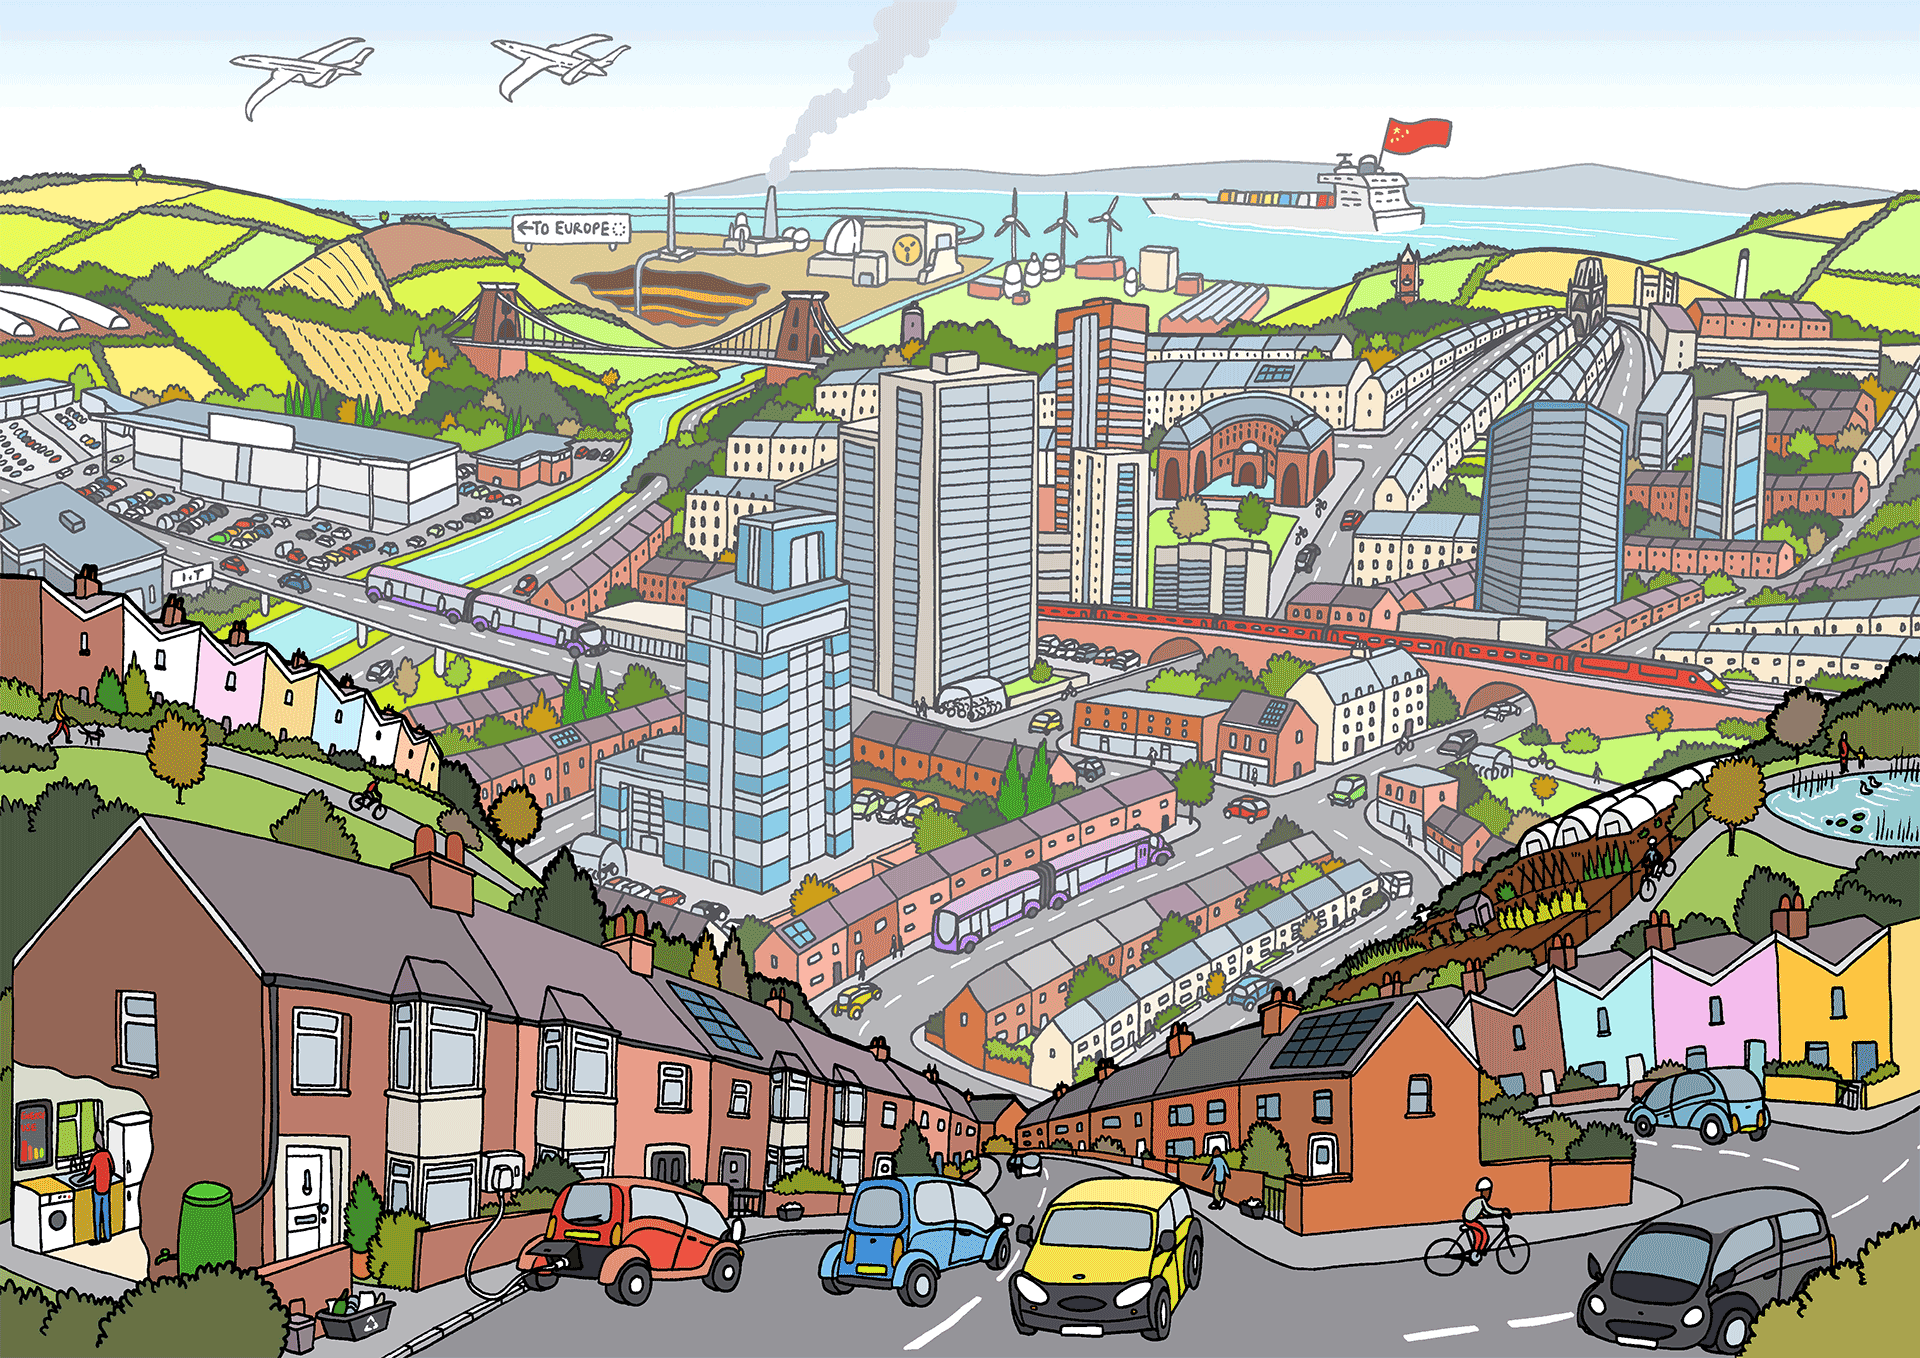 This part of town. Современный город рисунок. Городской пейзаж в иллюстраторе. Город рисунок для детей. Мультяшный современный город.